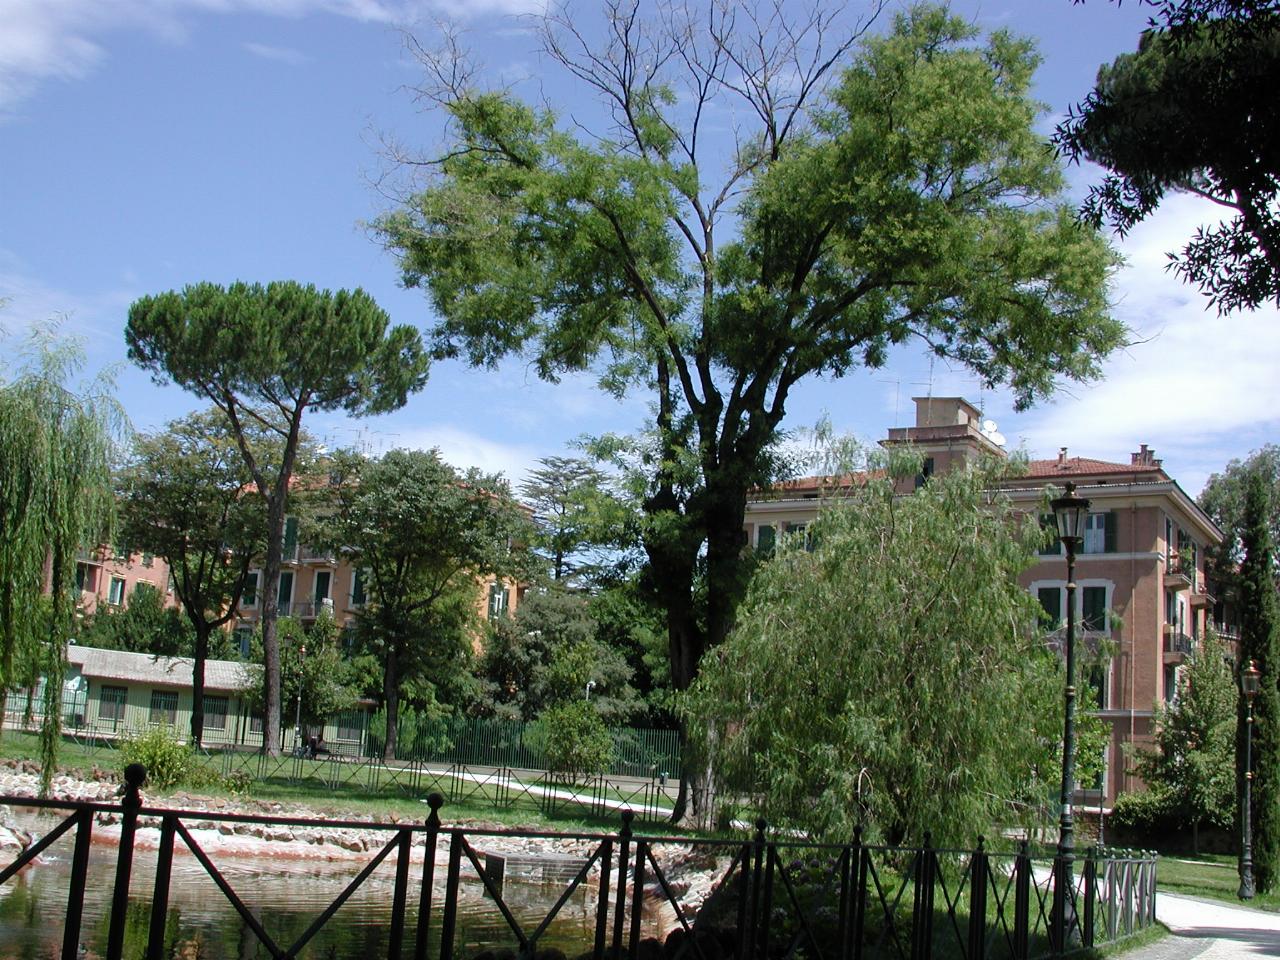 Typical scene in Villa Paganini (across street from Villa Torlonia)